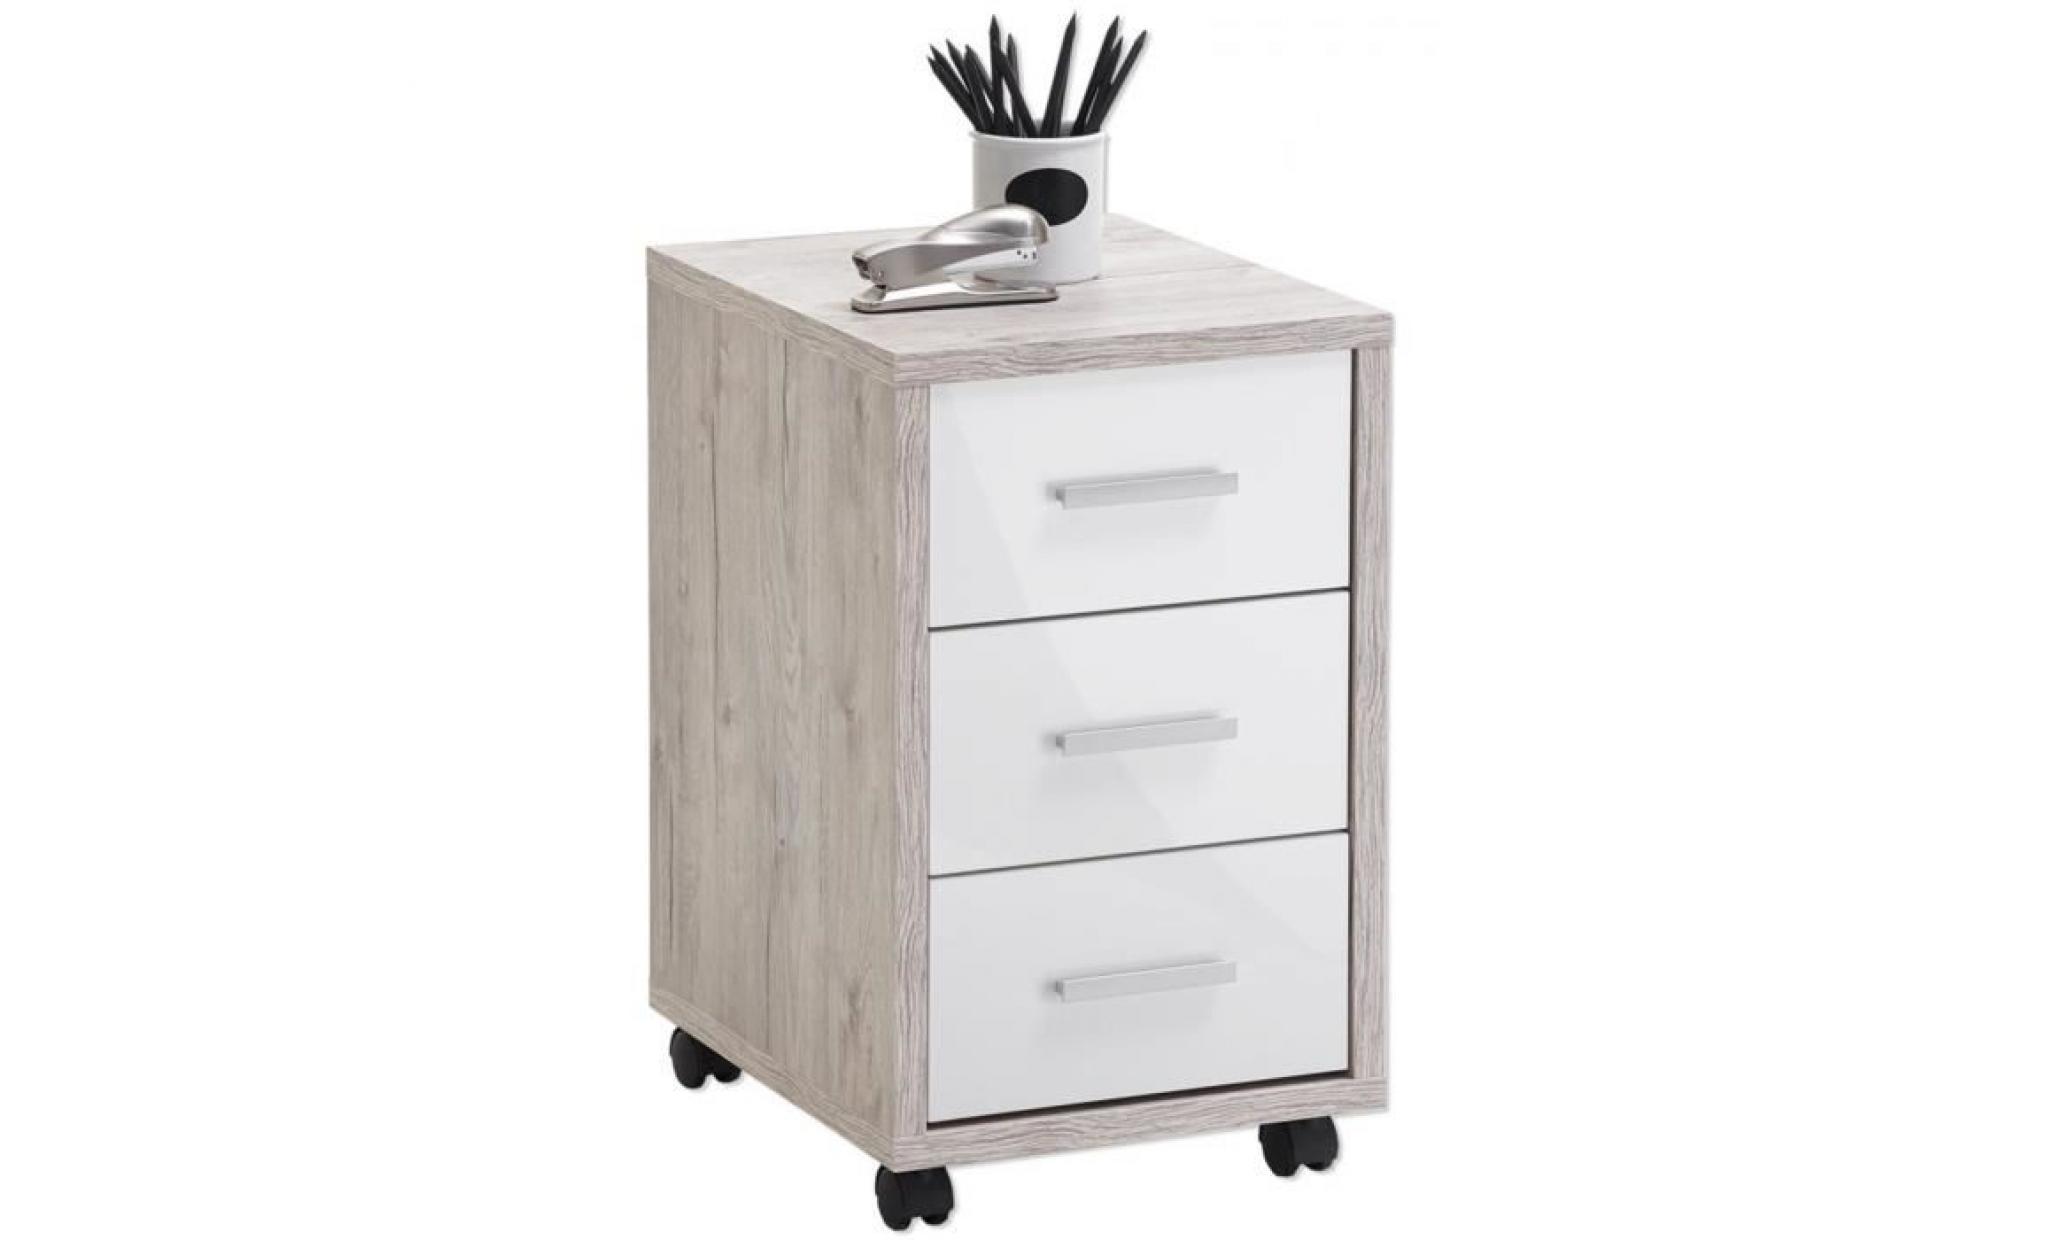 caisson de bureau sur roulettes avec 3 tiroirs coloris light atelier blanc brillant   dim : l 35 x h 59 x p 42 cm